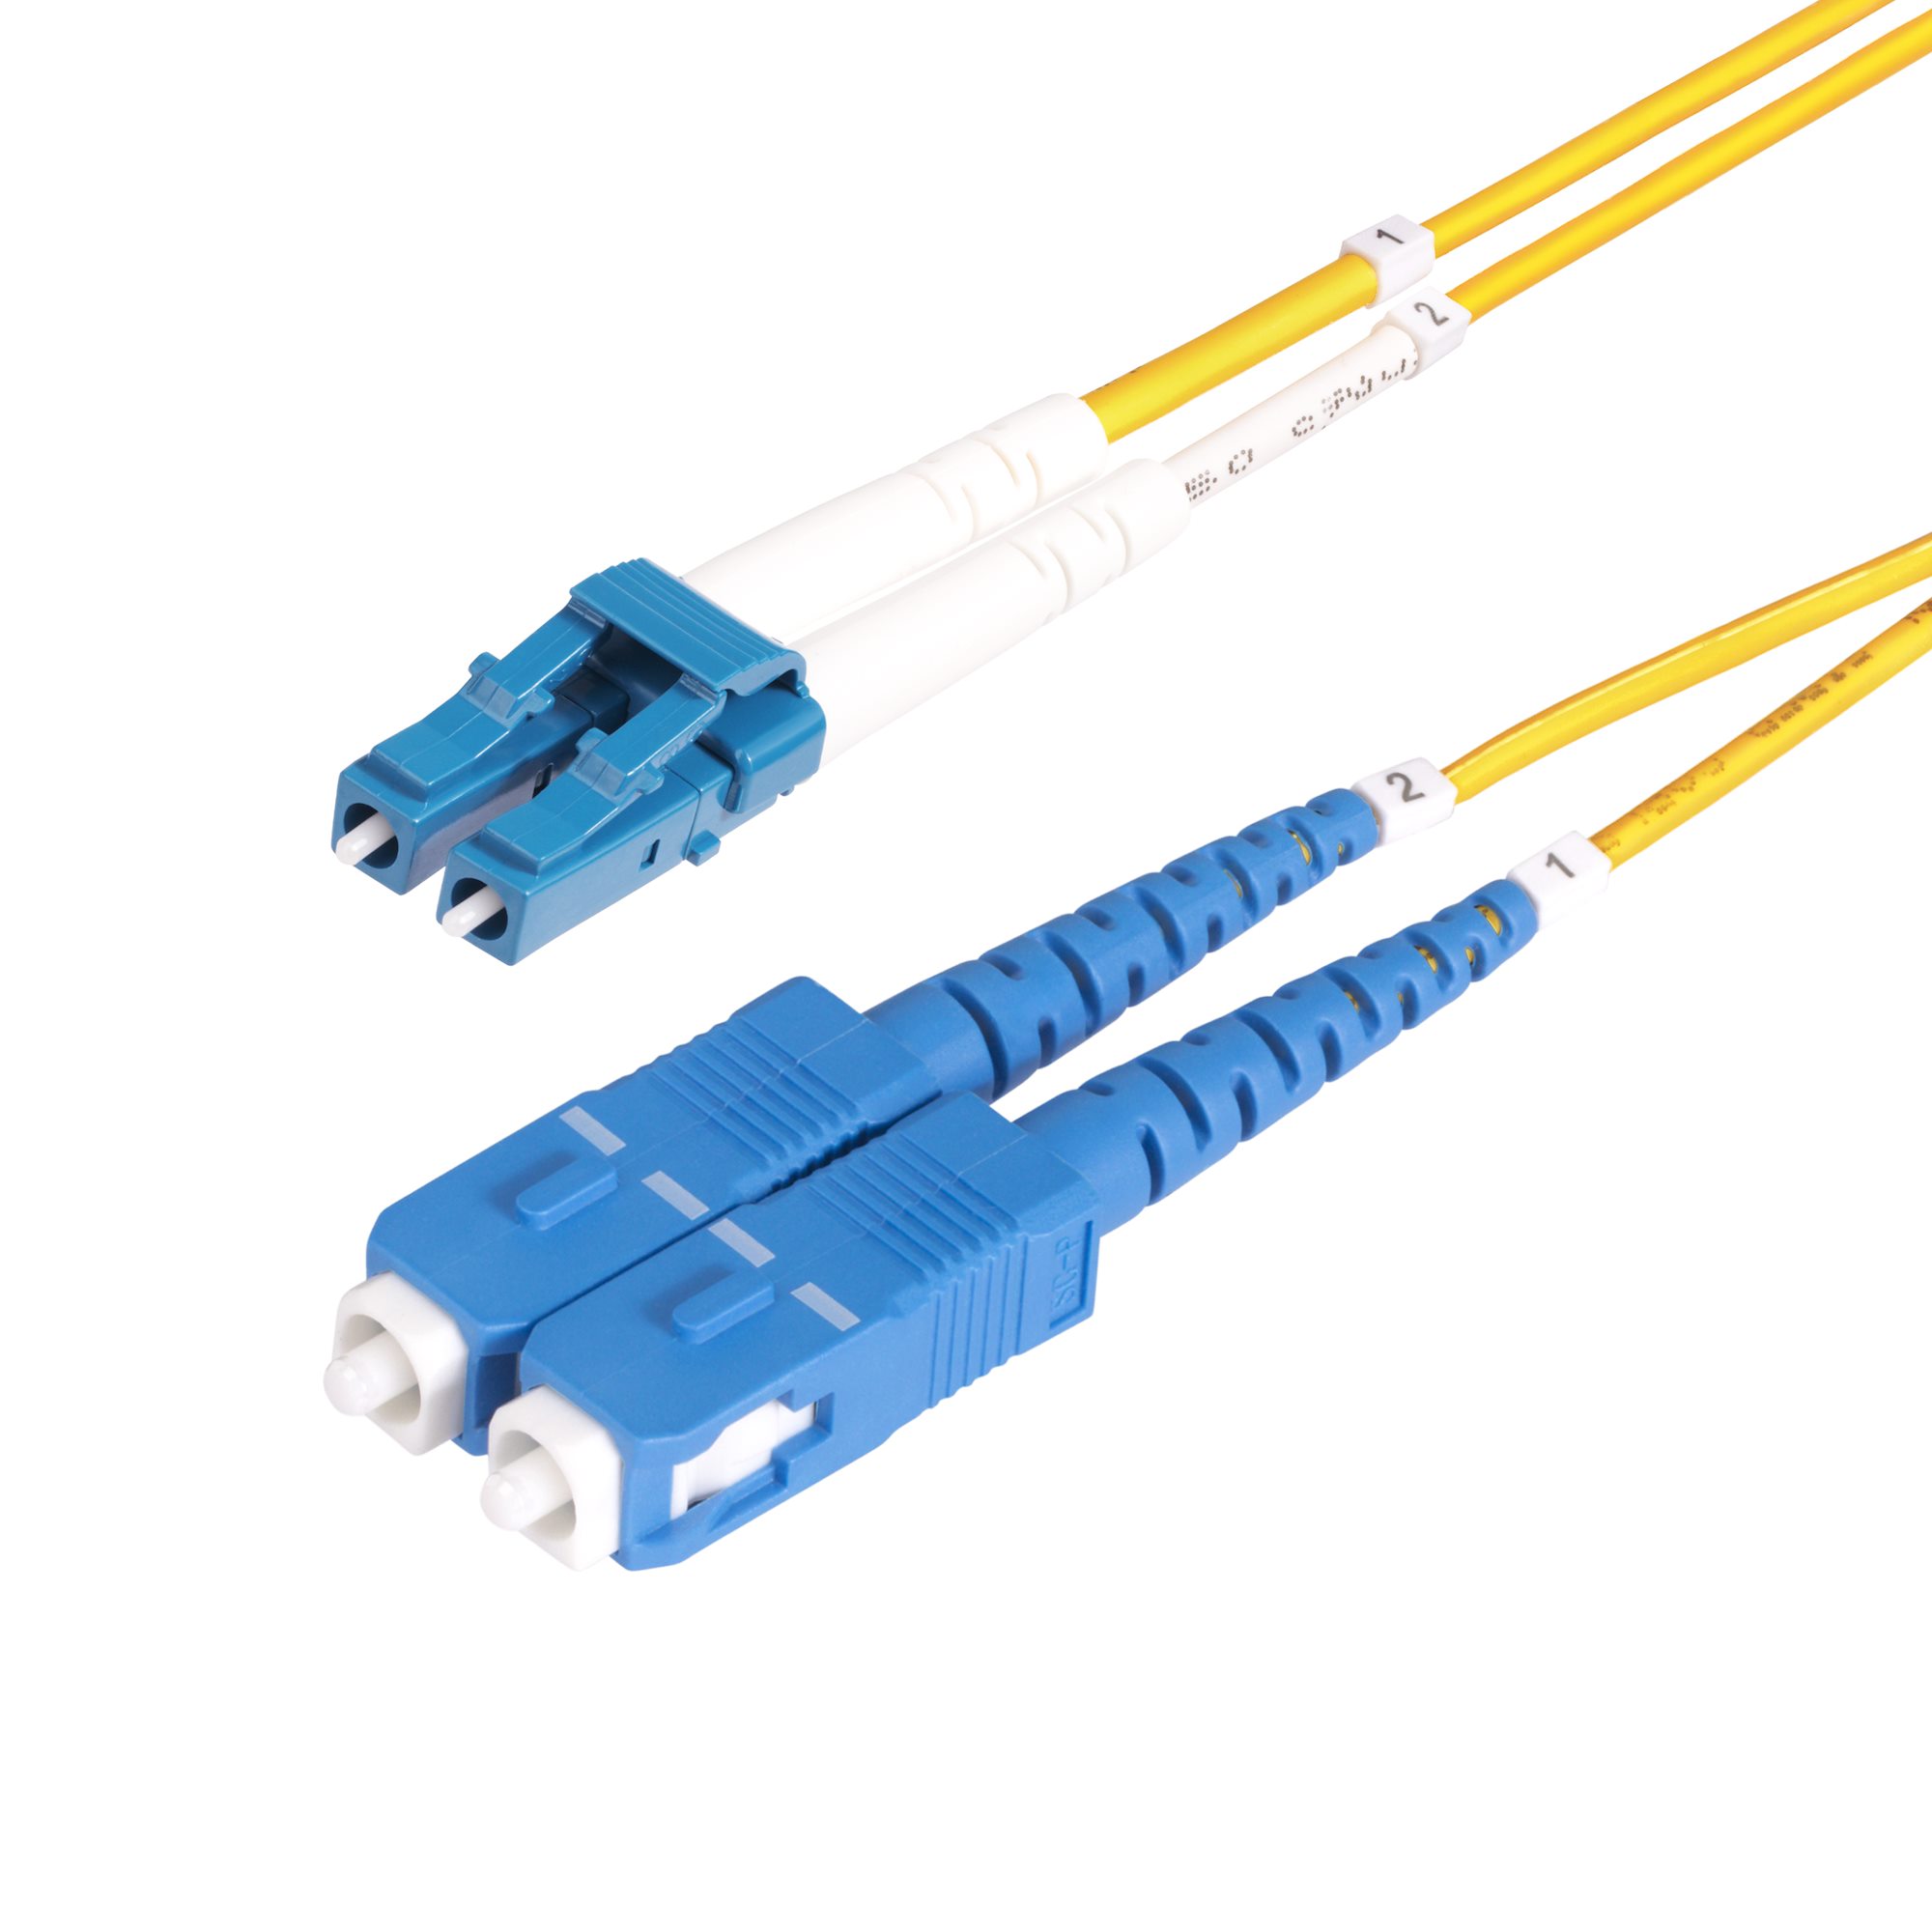 SMDOS2SCSC10M Cable De Fibra Optica Sc A Sc Upc  Os2 Monomodo De 10M UPC 0065030906623